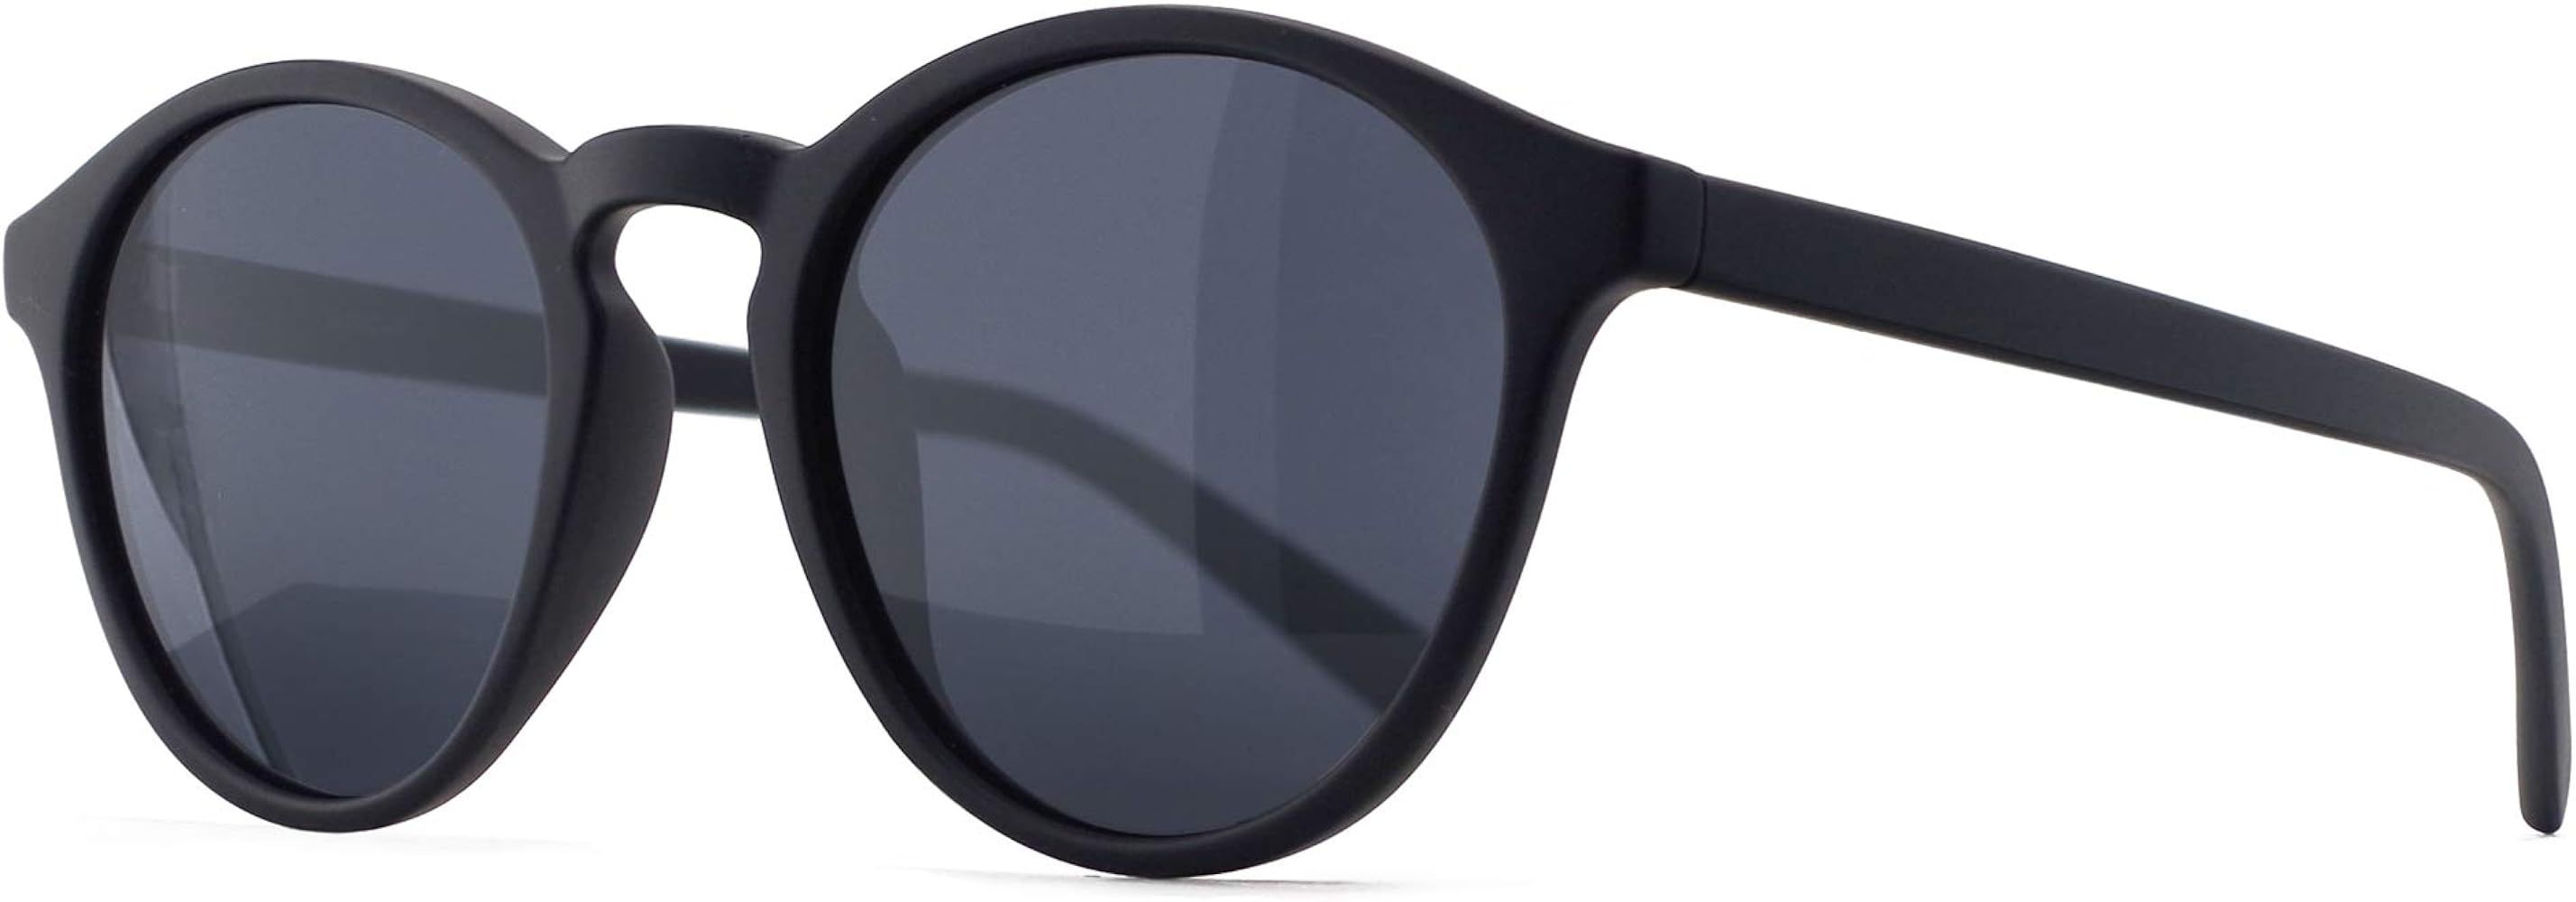 SUNGAIT Classic Round Polarized Sunglasses Retro Vintage Style UV400 | Amazon (US)